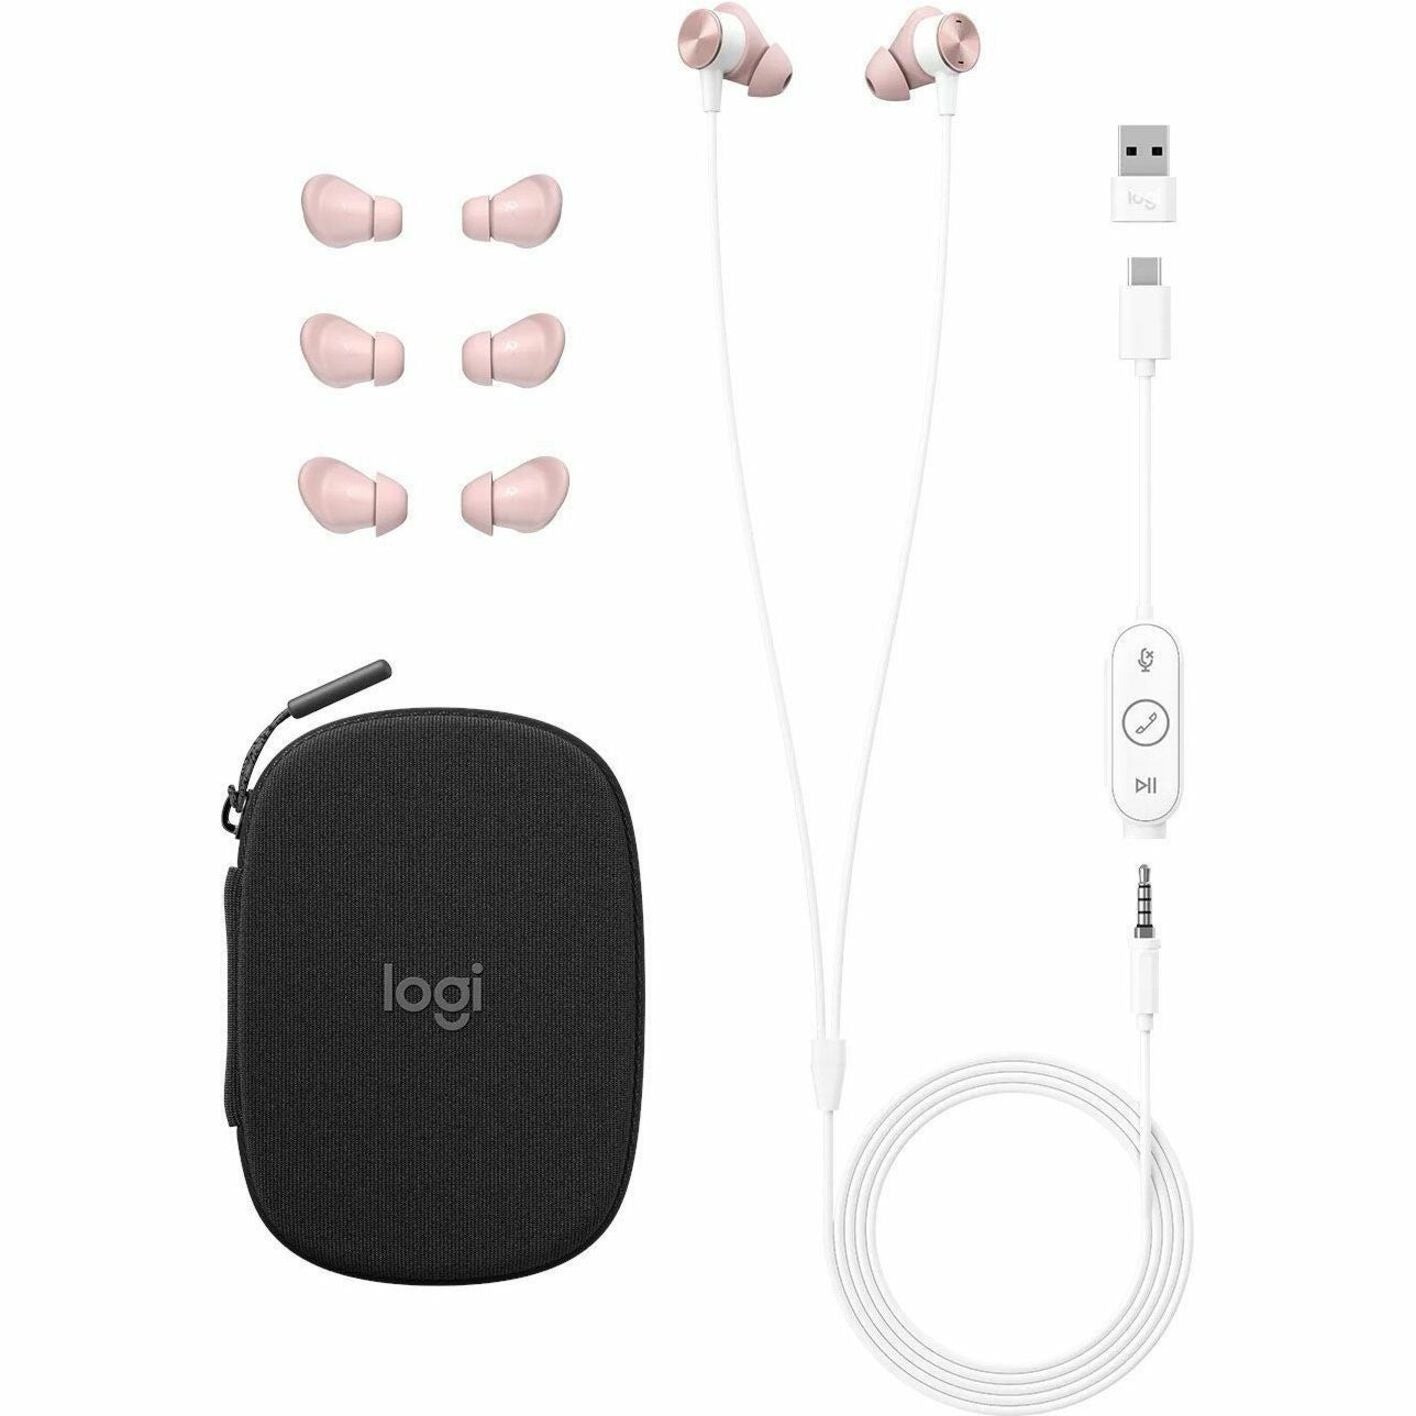 罗技 981-001134 区域有线耳塞，双耳耳机，带消噪麦克风，USB-C连接器，玫瑰色 罗技 - 罗技